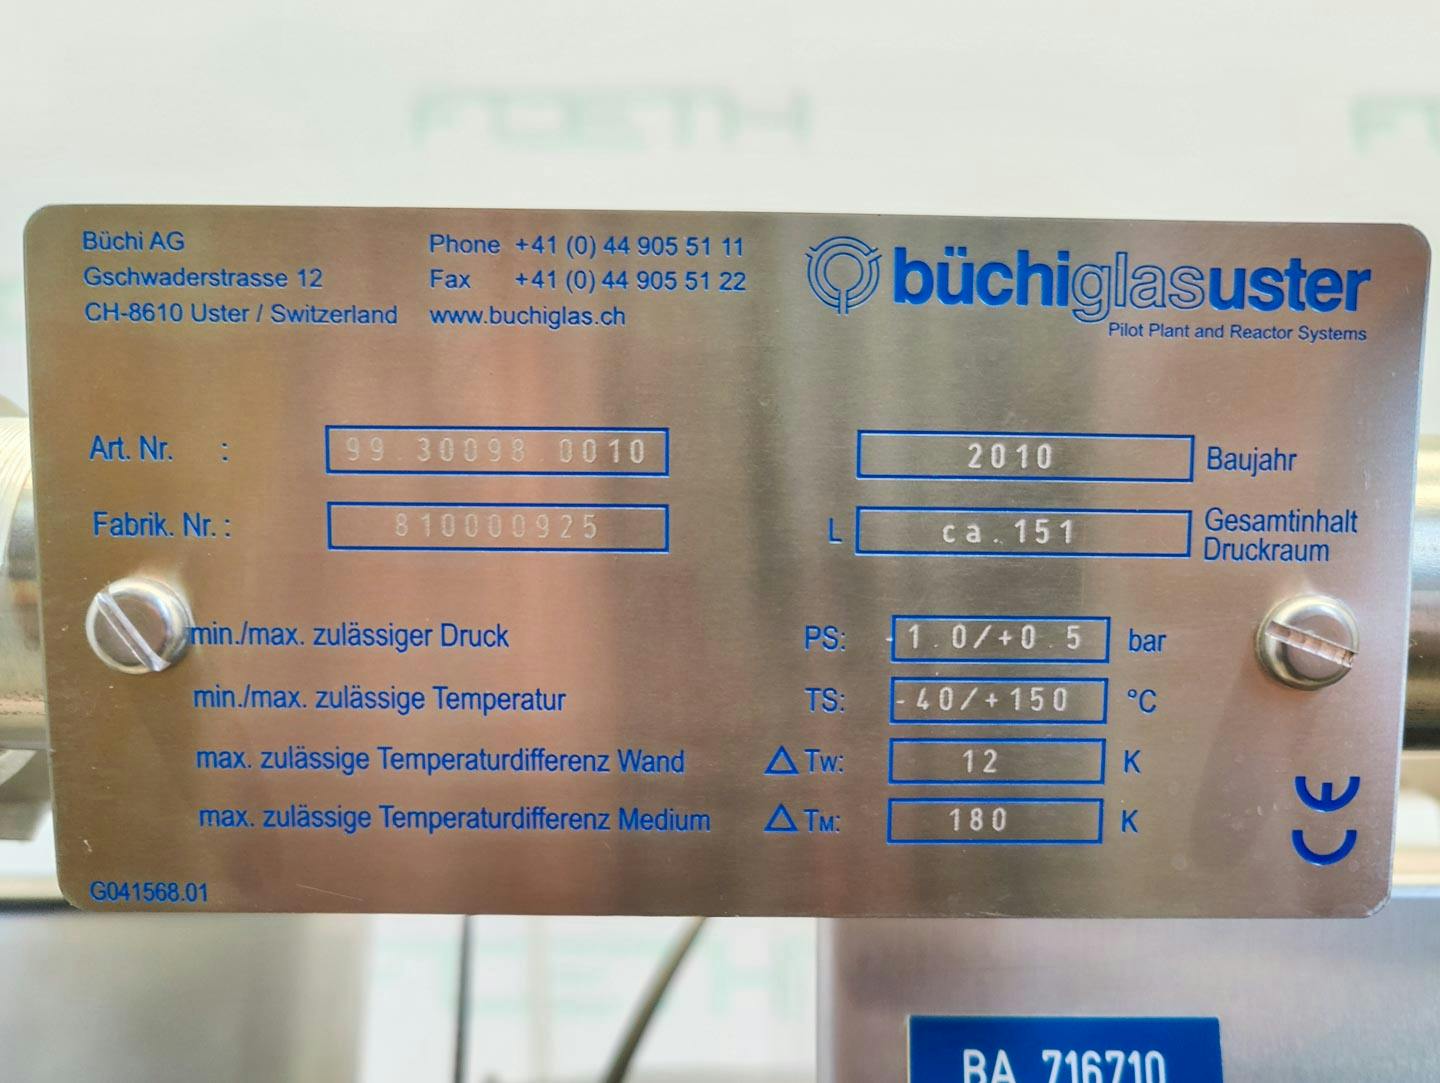 Büchi Filter 140 Ltr. (Ex) - filter reactor - Filtro Nucha - image 13